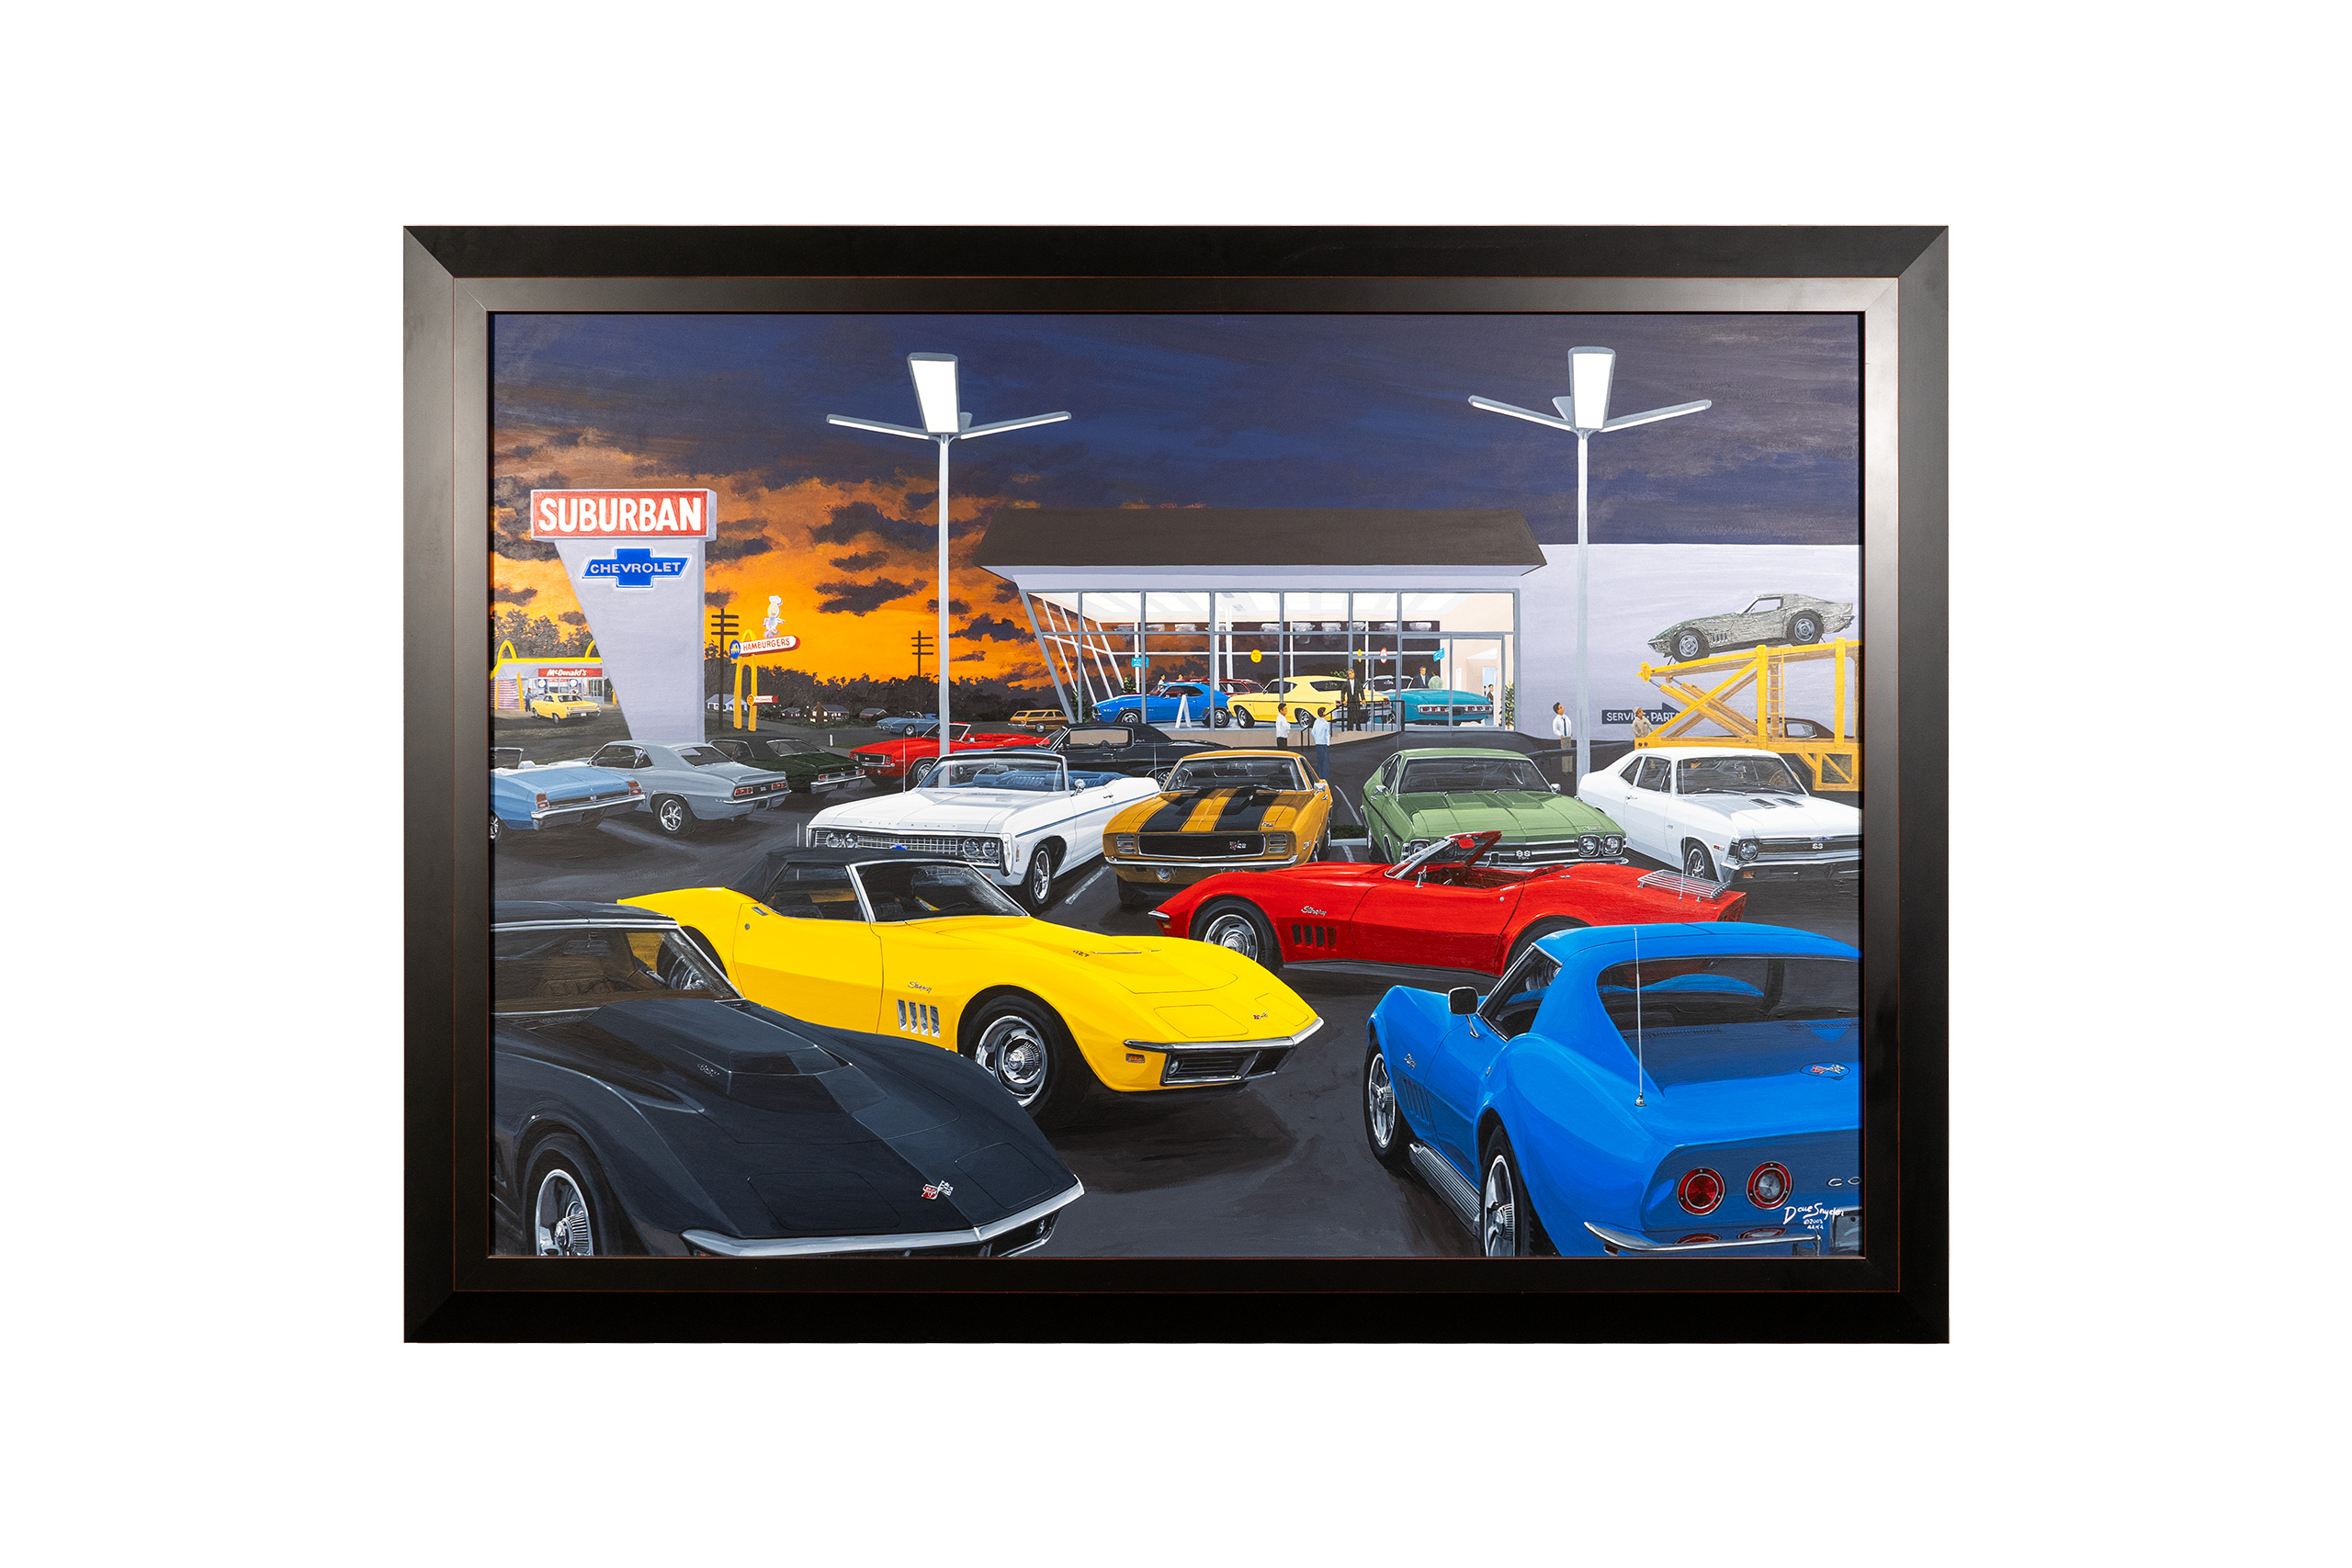 C3 1969 Chevrolet Corvette Delivery Day: The 69's Original Framed Artwork - David Snyder